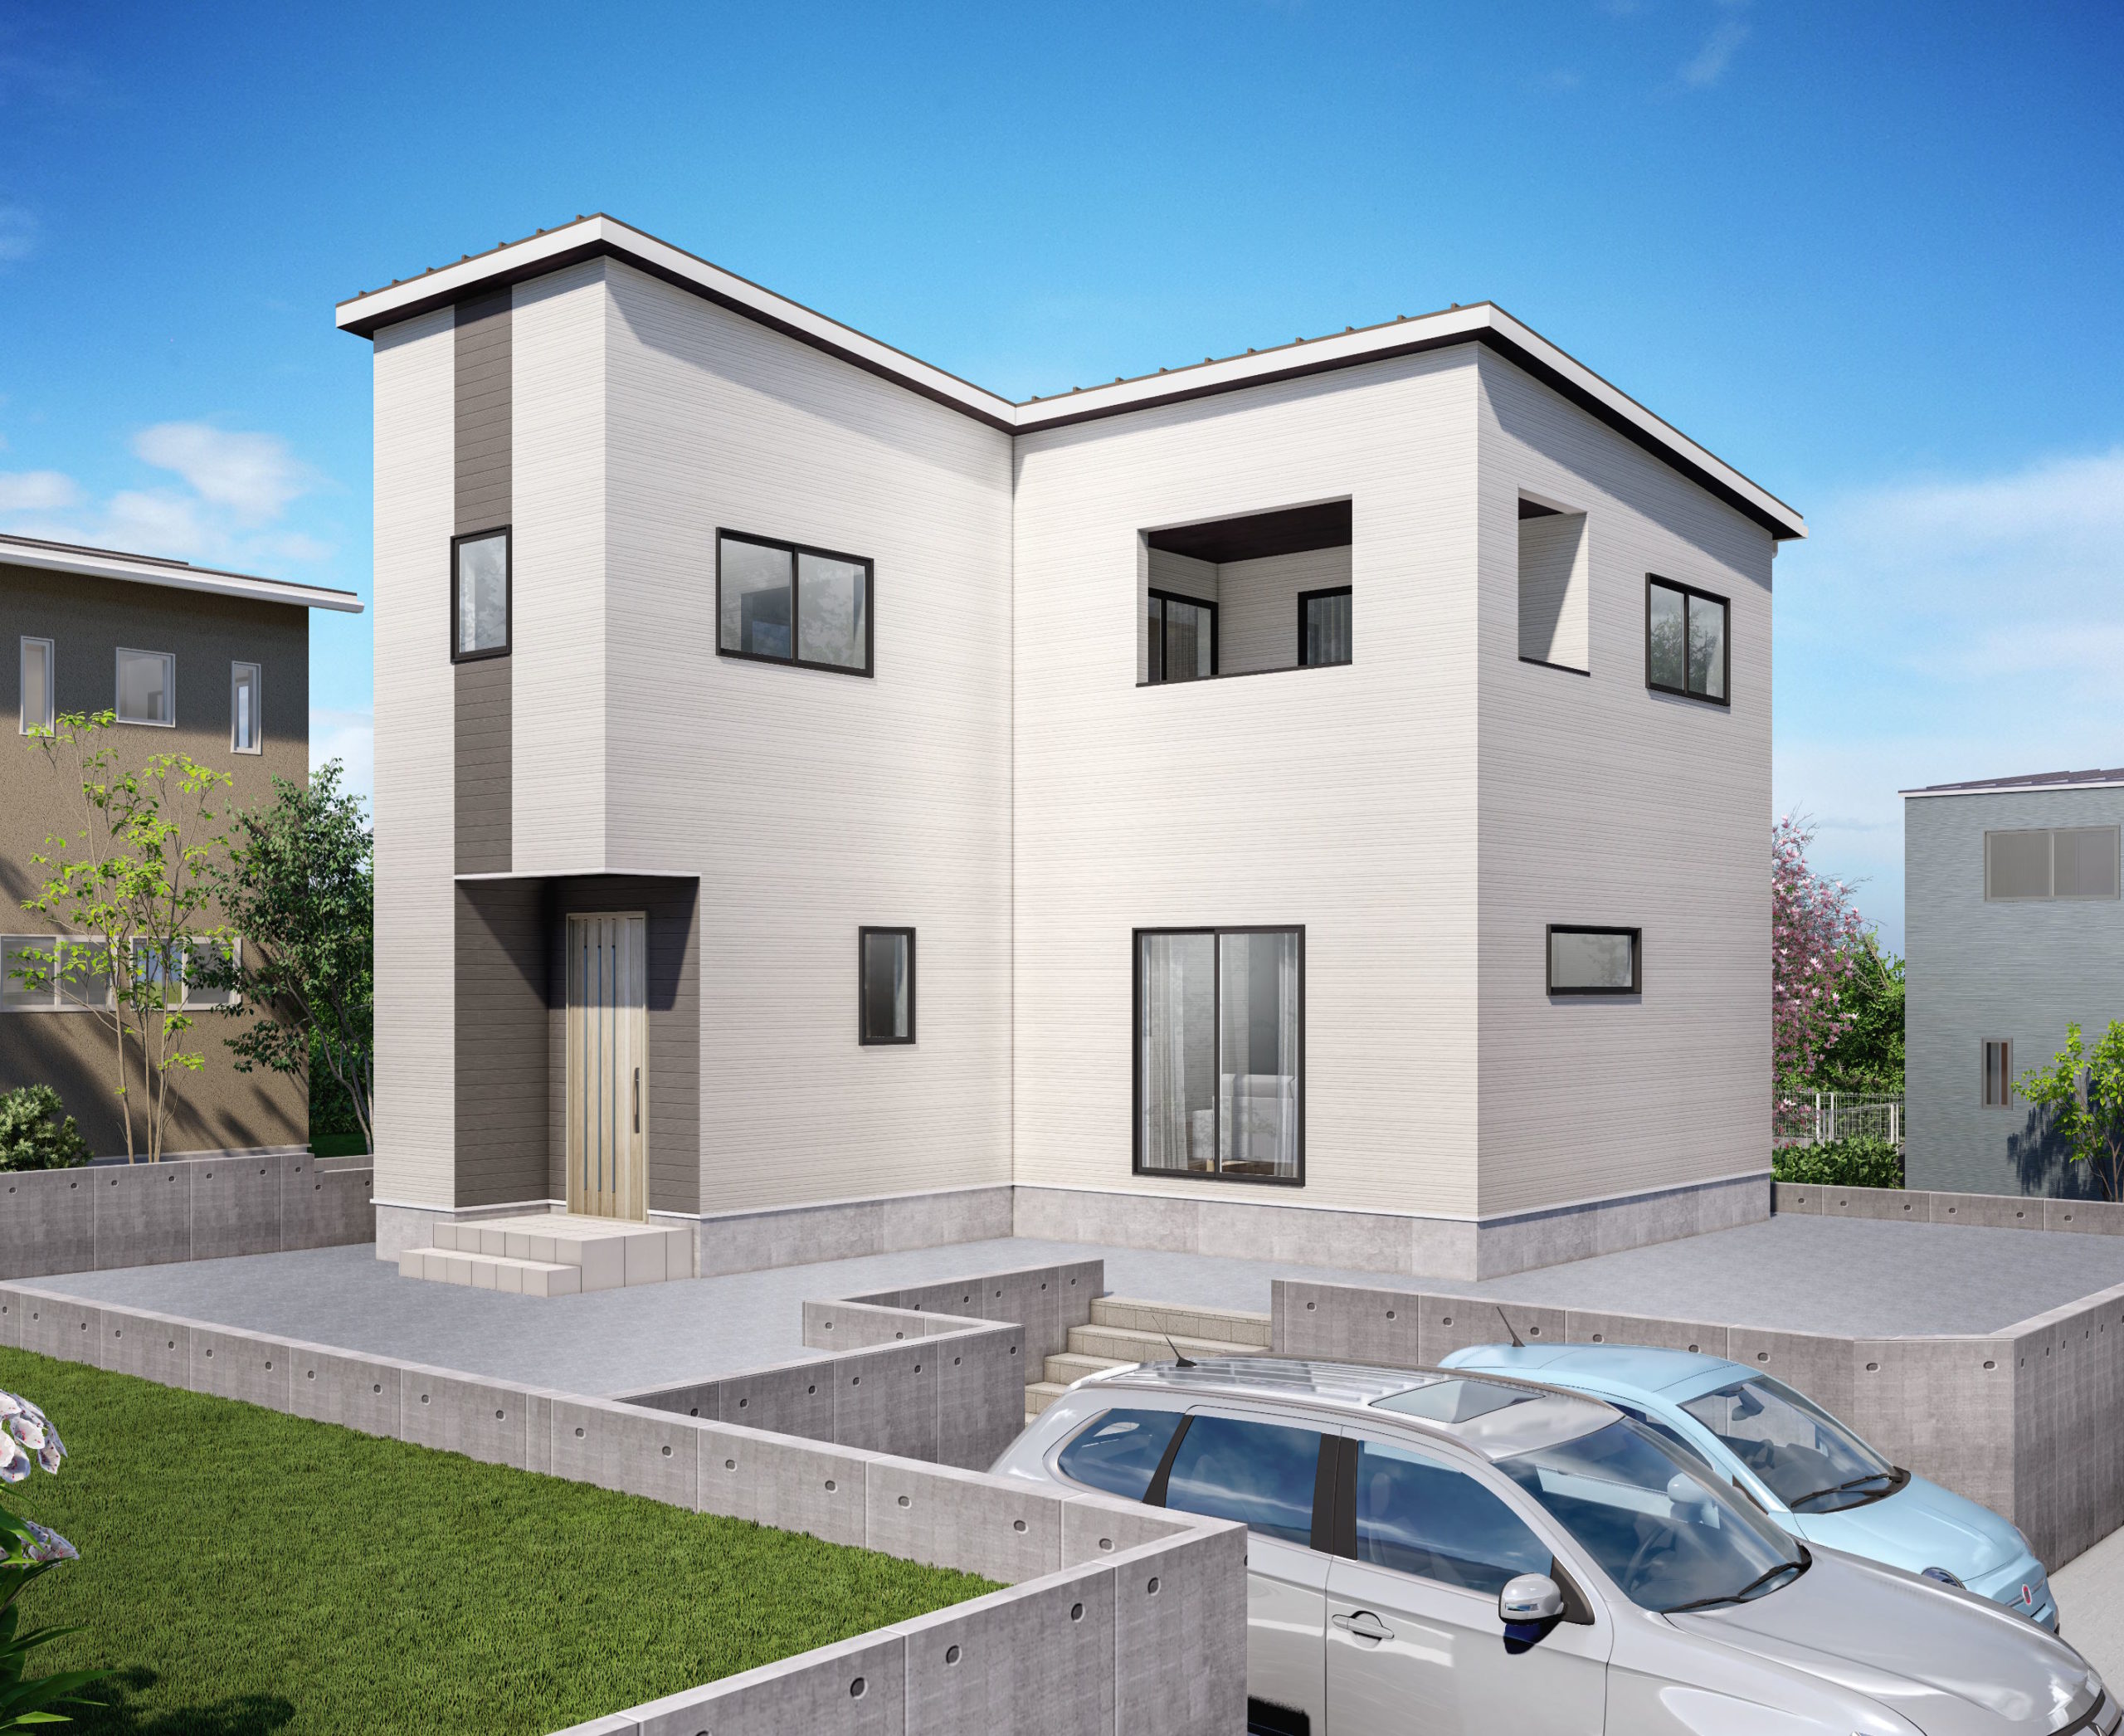 群馬県北群馬郡吉岡町 / ホワイトカラーのデザイン耐震住宅のイメージ画像